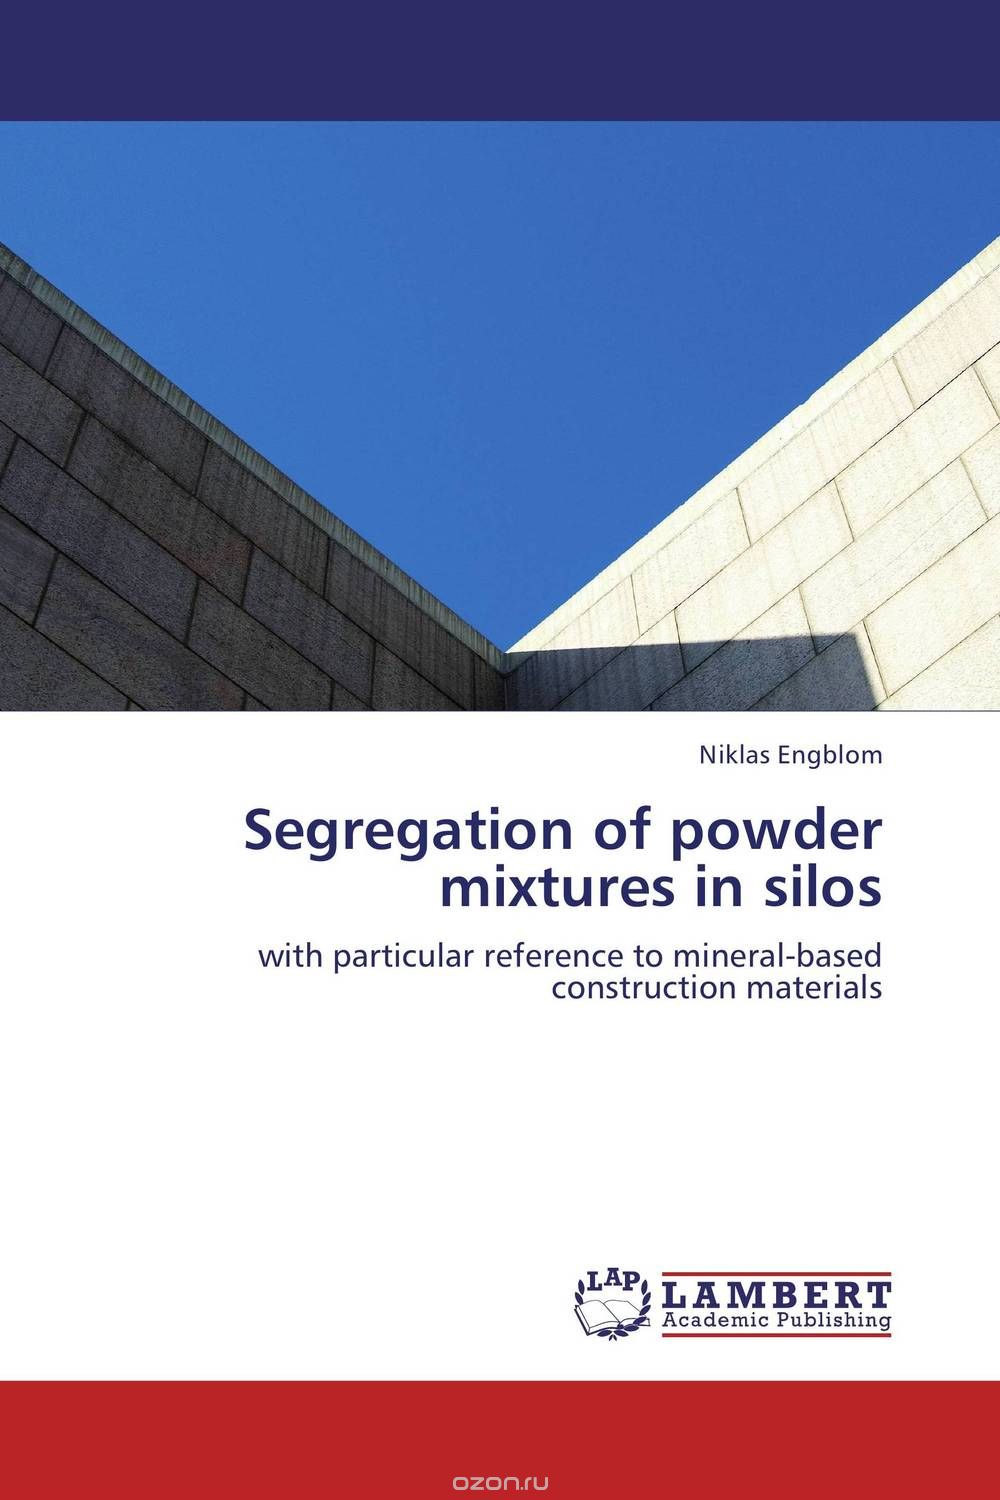 Скачать книгу "Segregation of powder mixtures in silos"